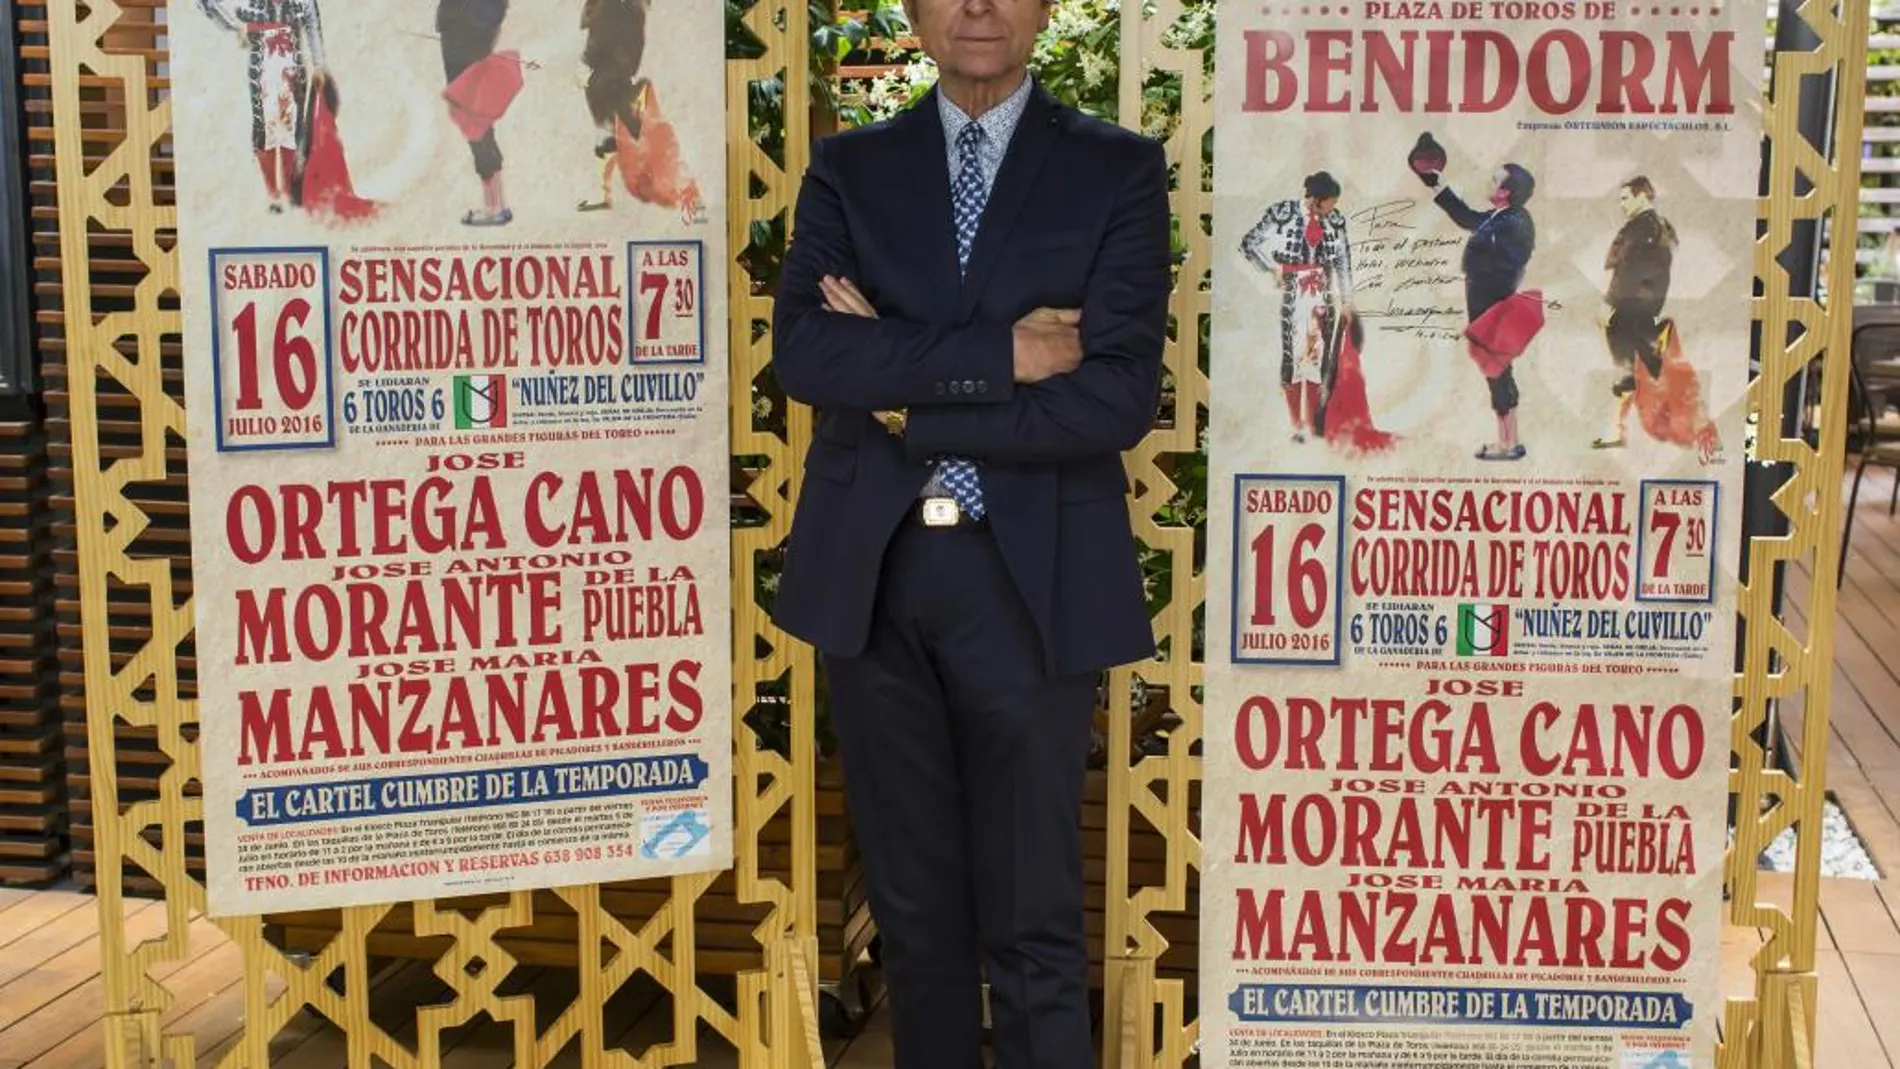 Ortega Cano reaparece junto a Manzanares y Morante